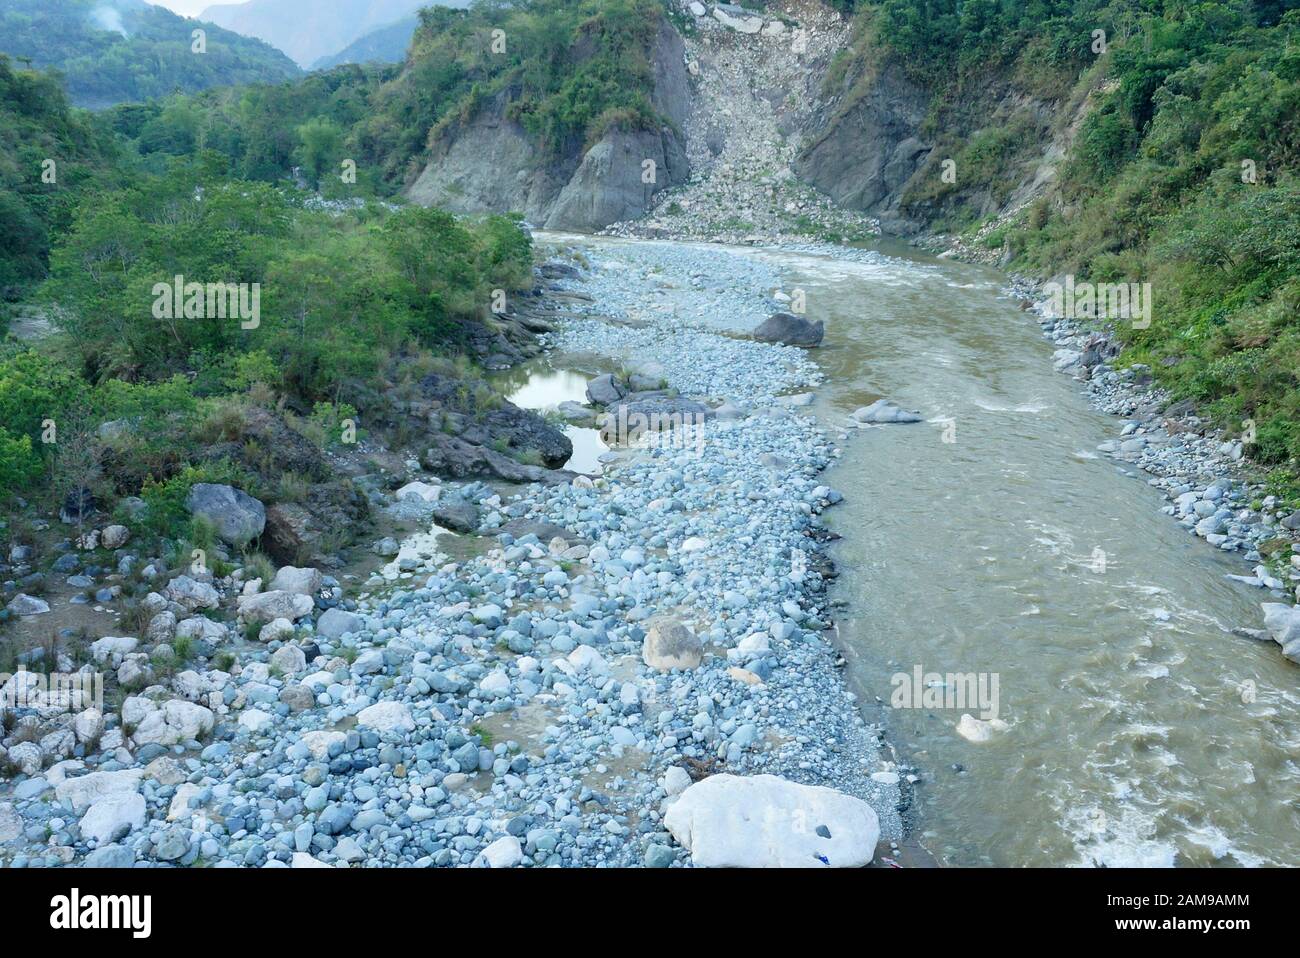 Schmutziger Fluss durch Steinbrüchen in Benguet, Philippinen. Ungeeignet für Angeln und andere Freizeitaktivitäten. Foto aufgenommen am 28. April 2014 Stockfoto